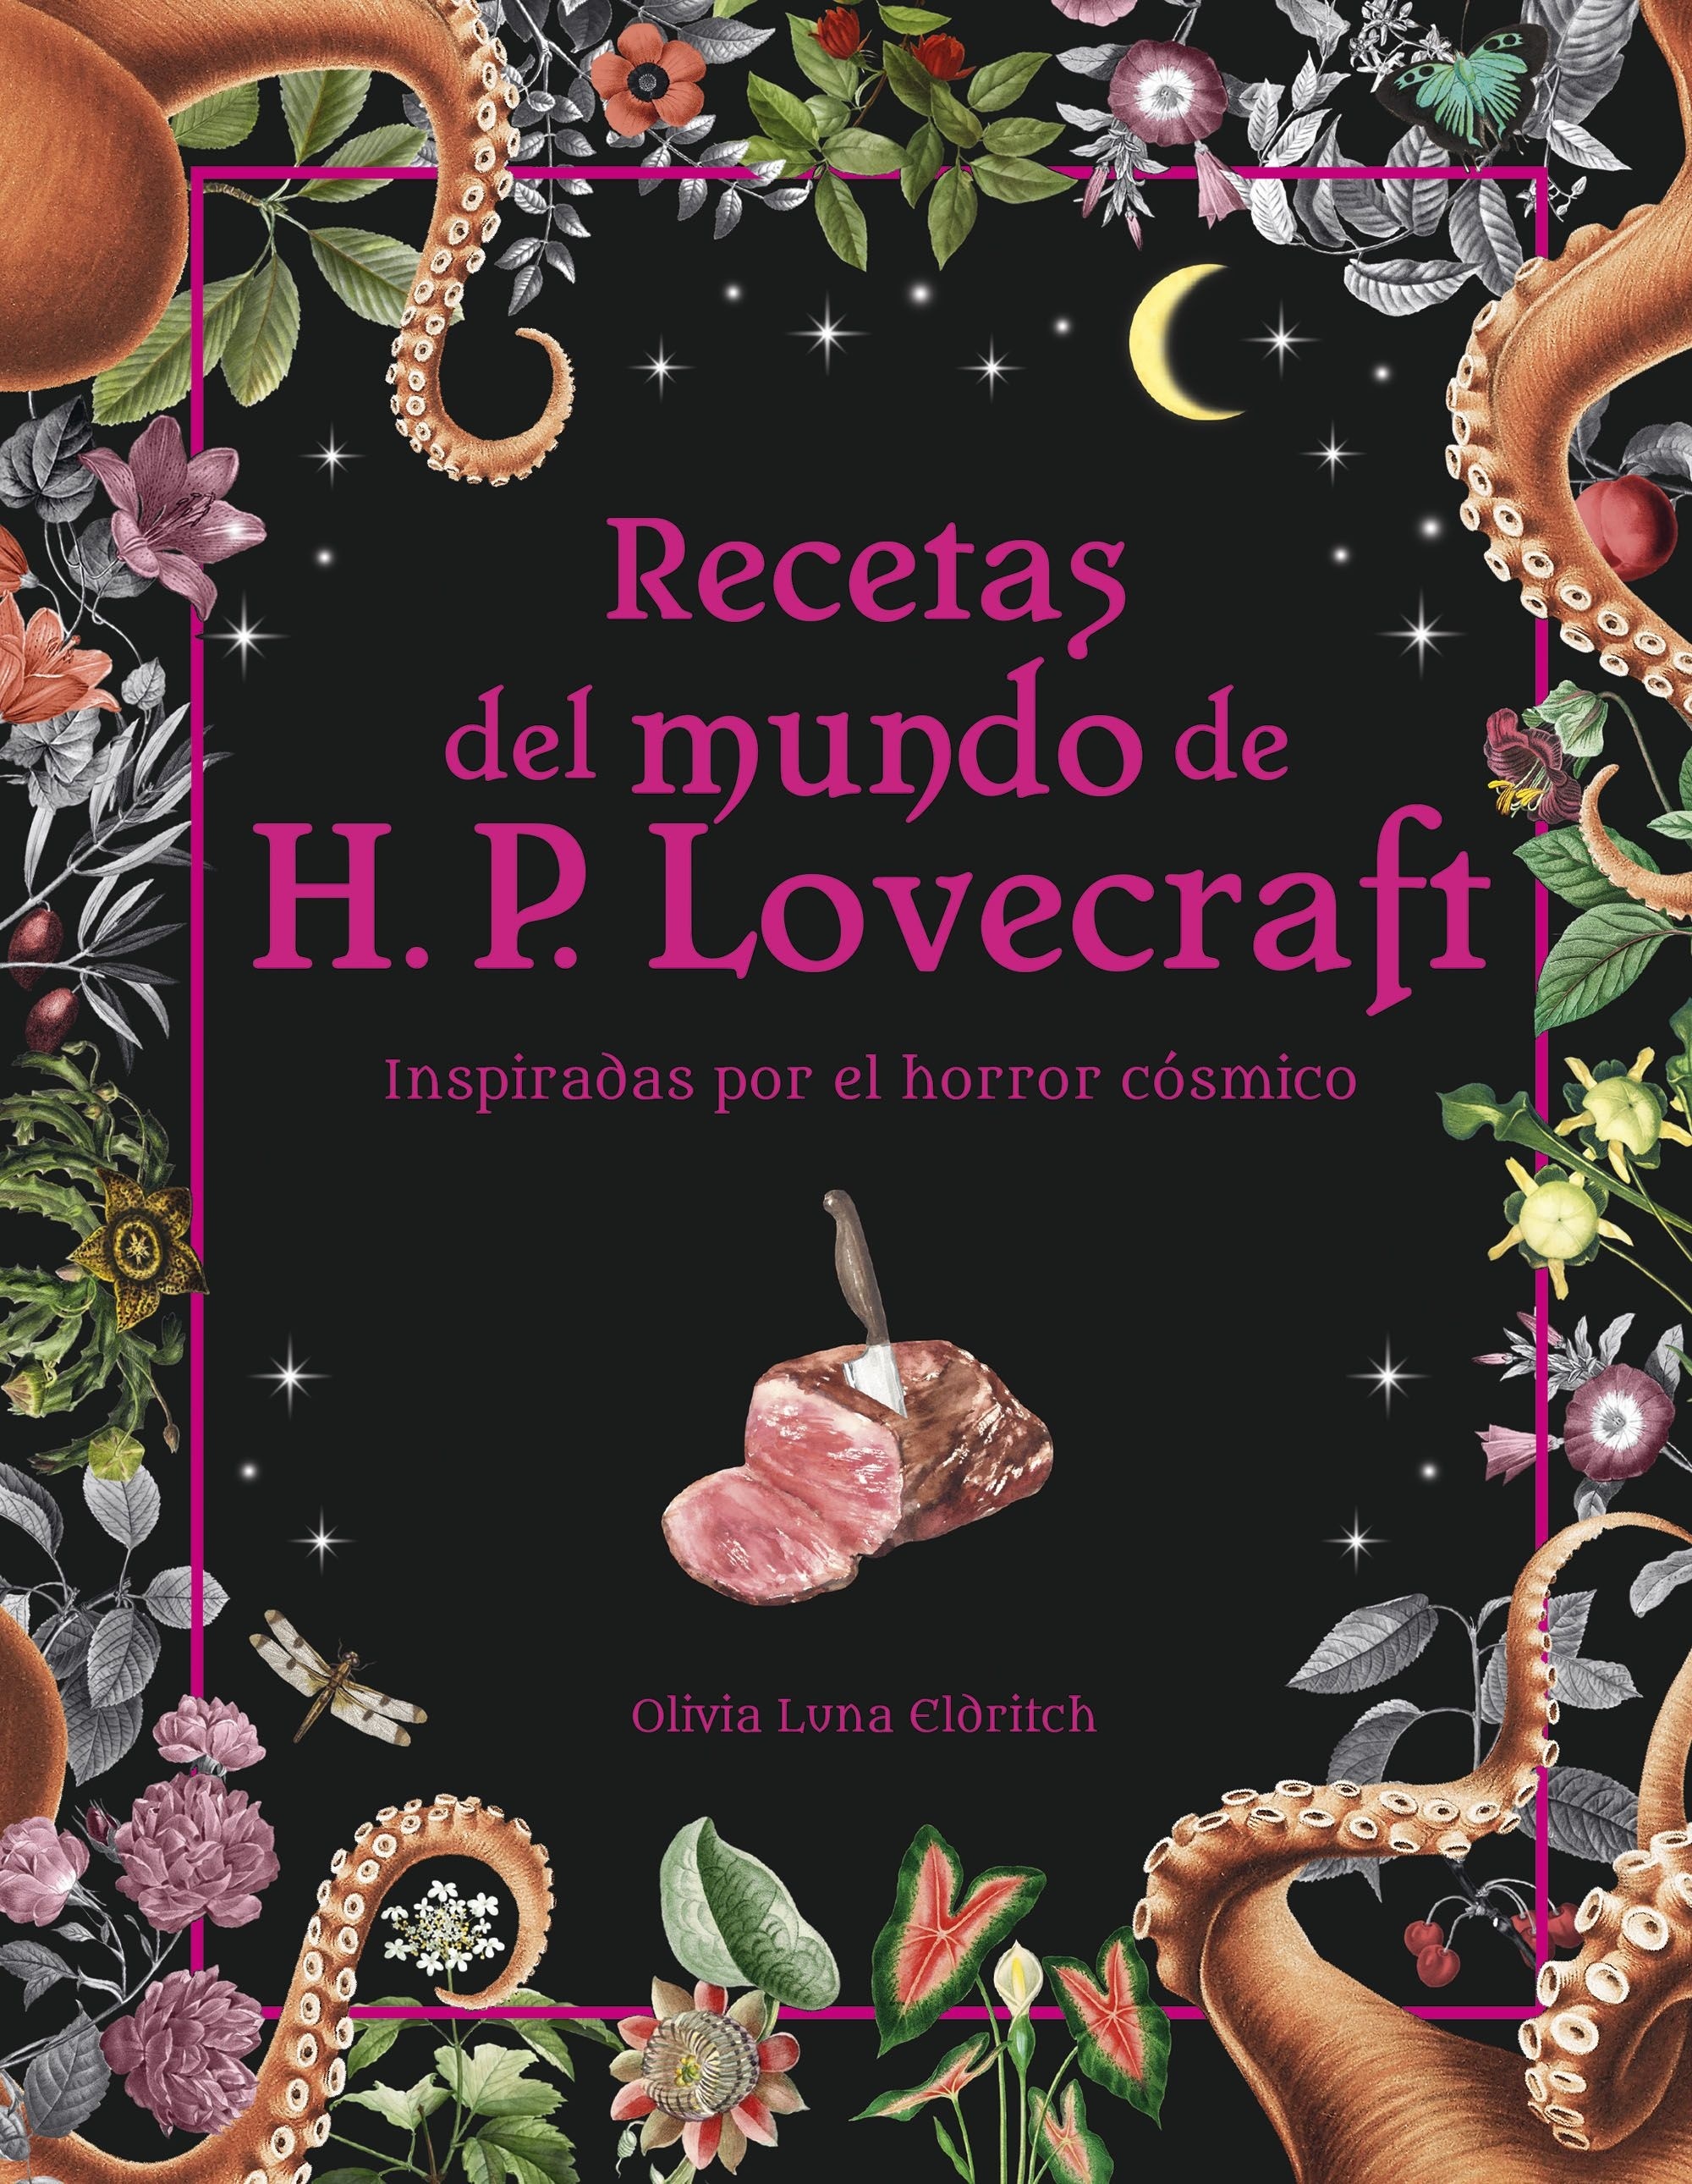 Recetas del mundo de H.P. Lovecraft. 